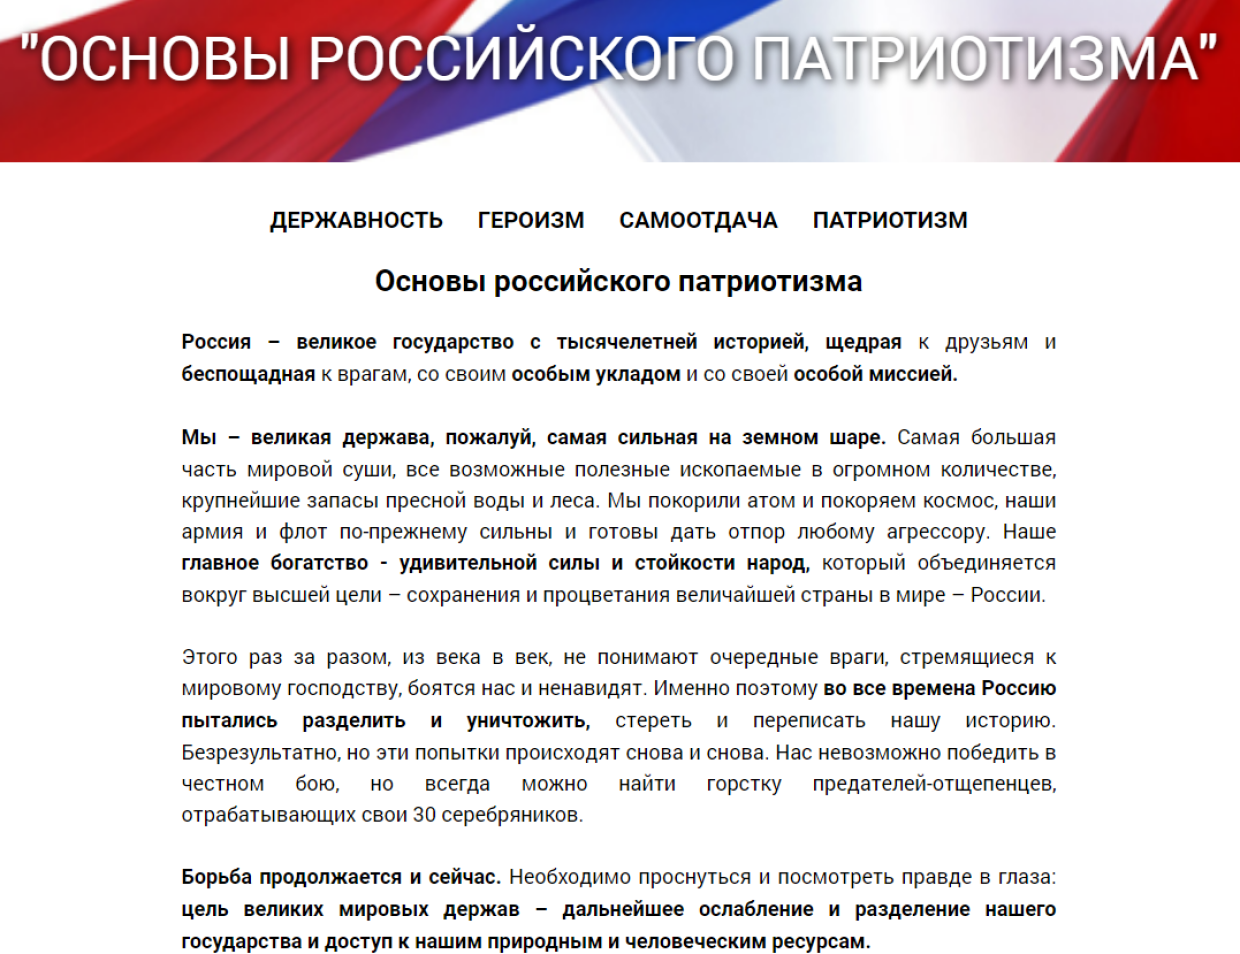 ФЗНЦ представил для всенародного обсуждения «Основы российского патриотизма»